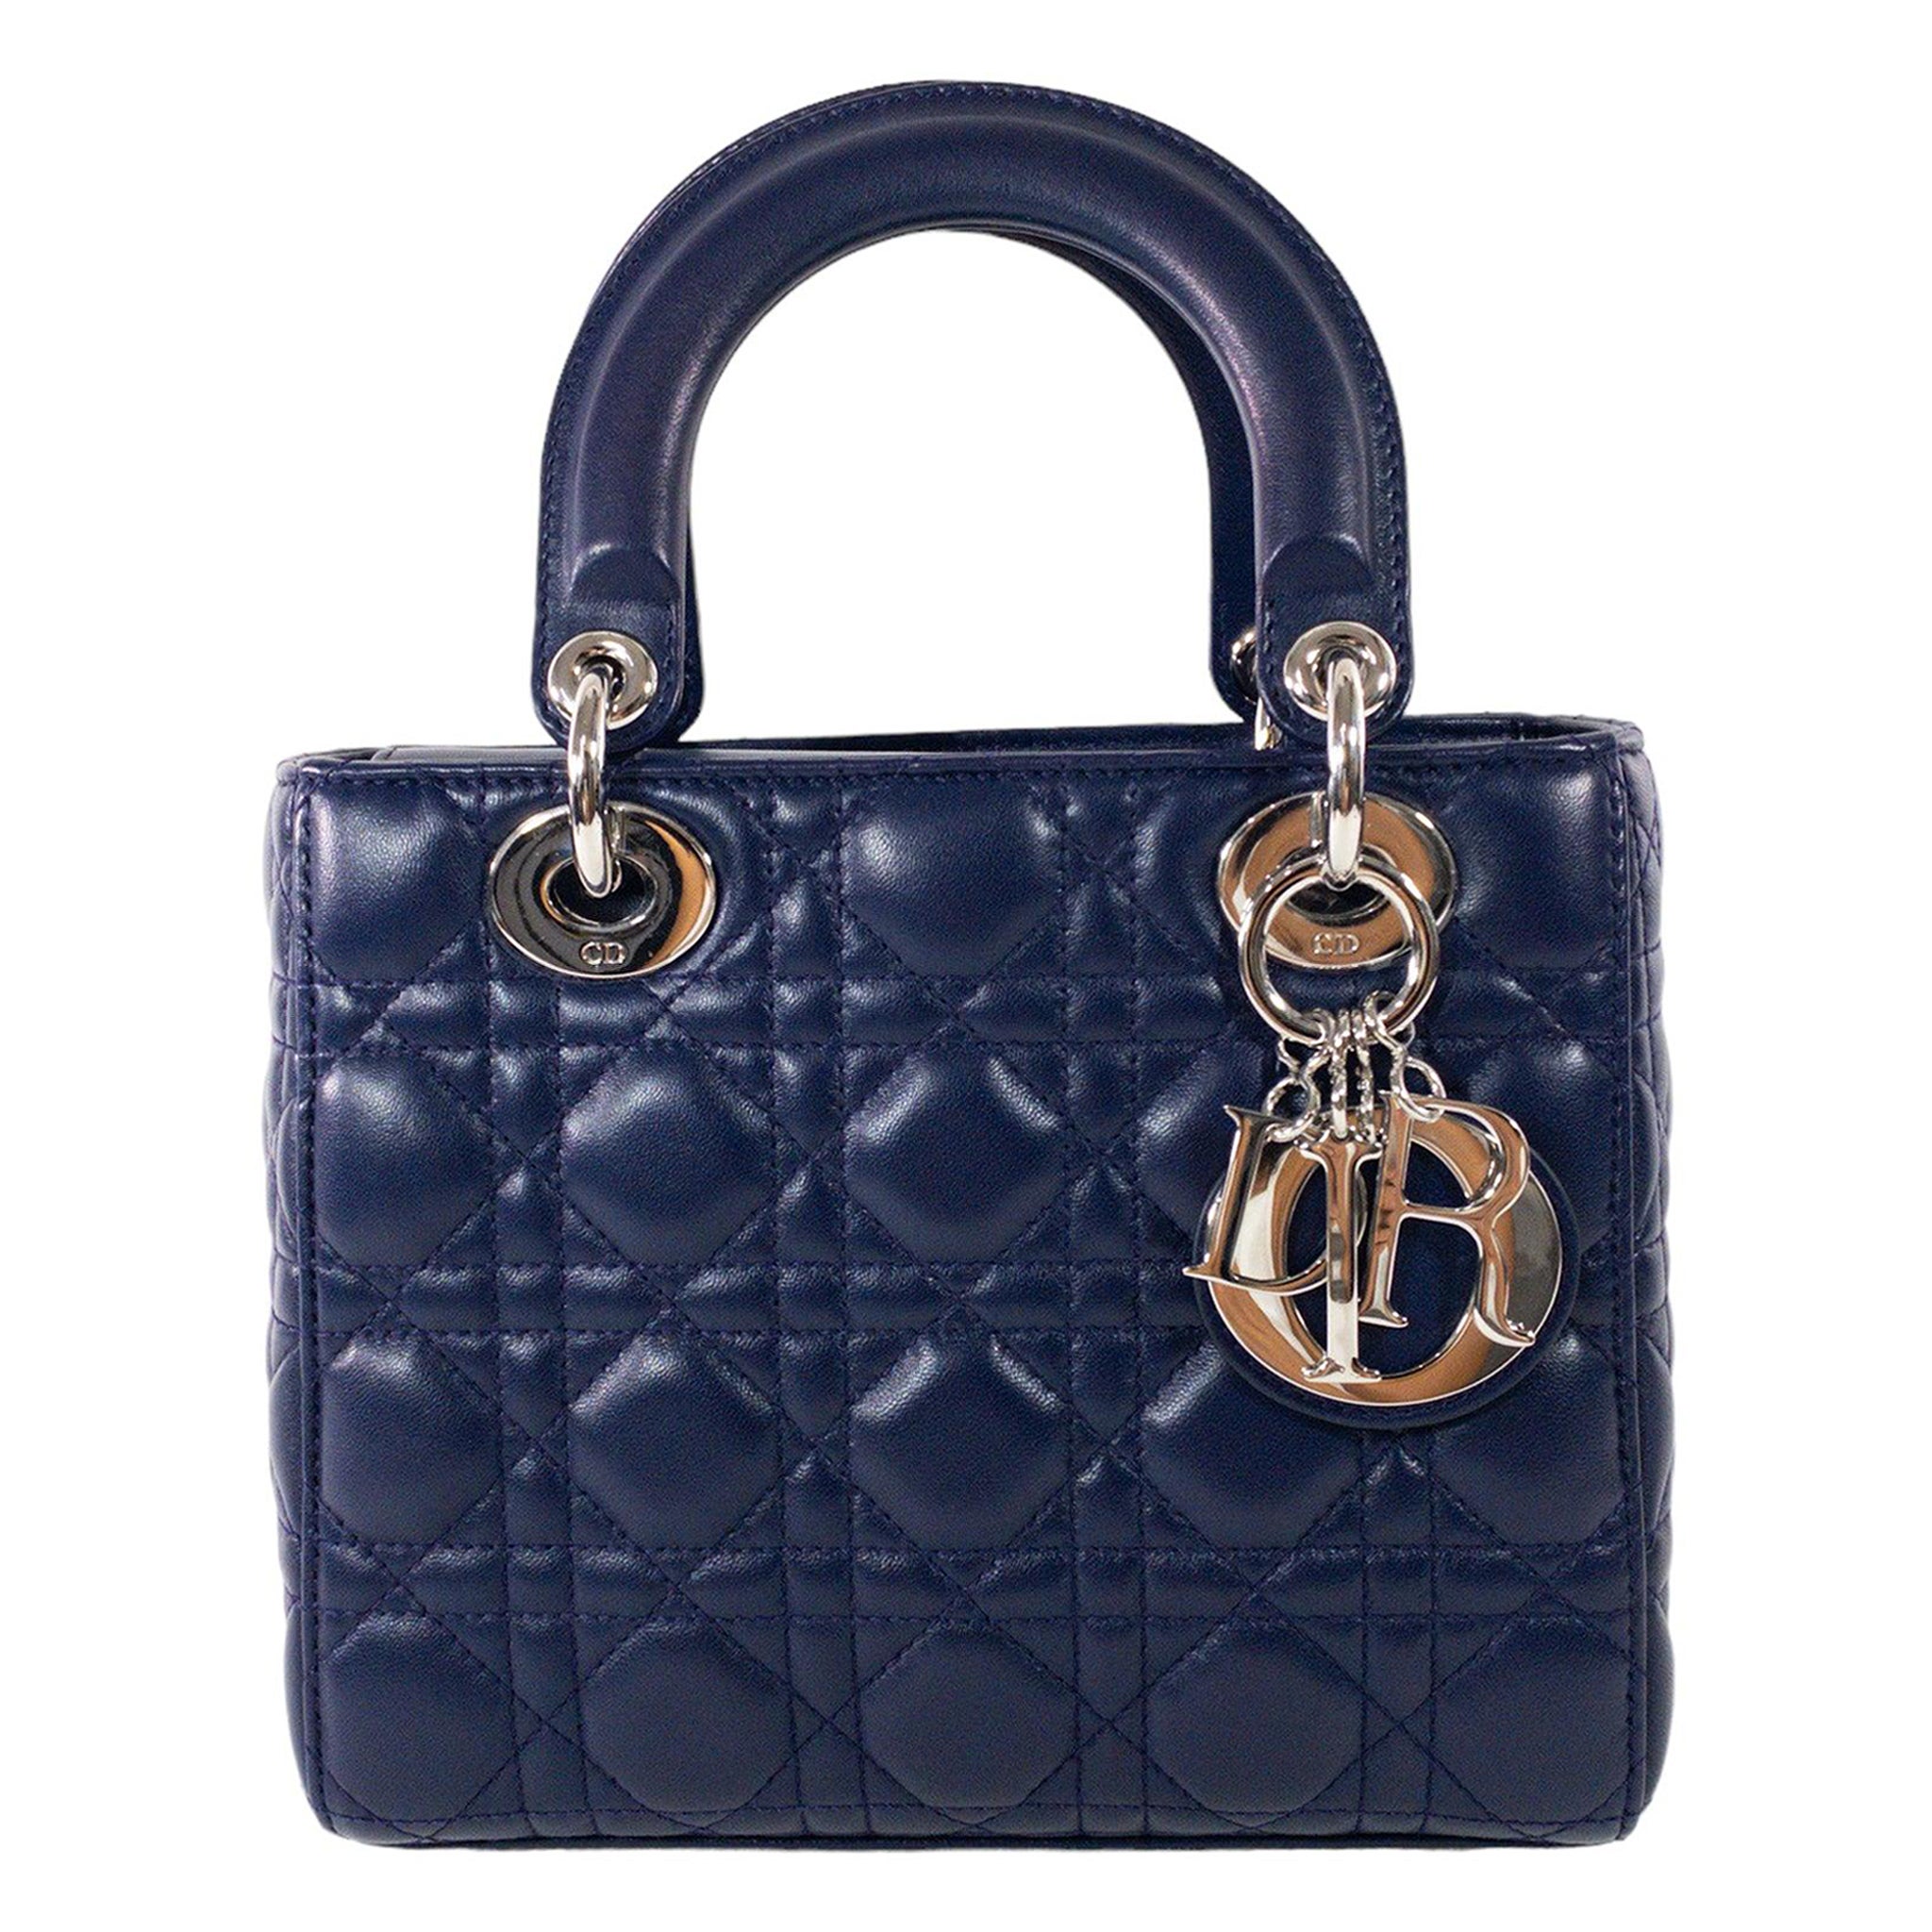 How do you attach a Lady Dior bag strap?